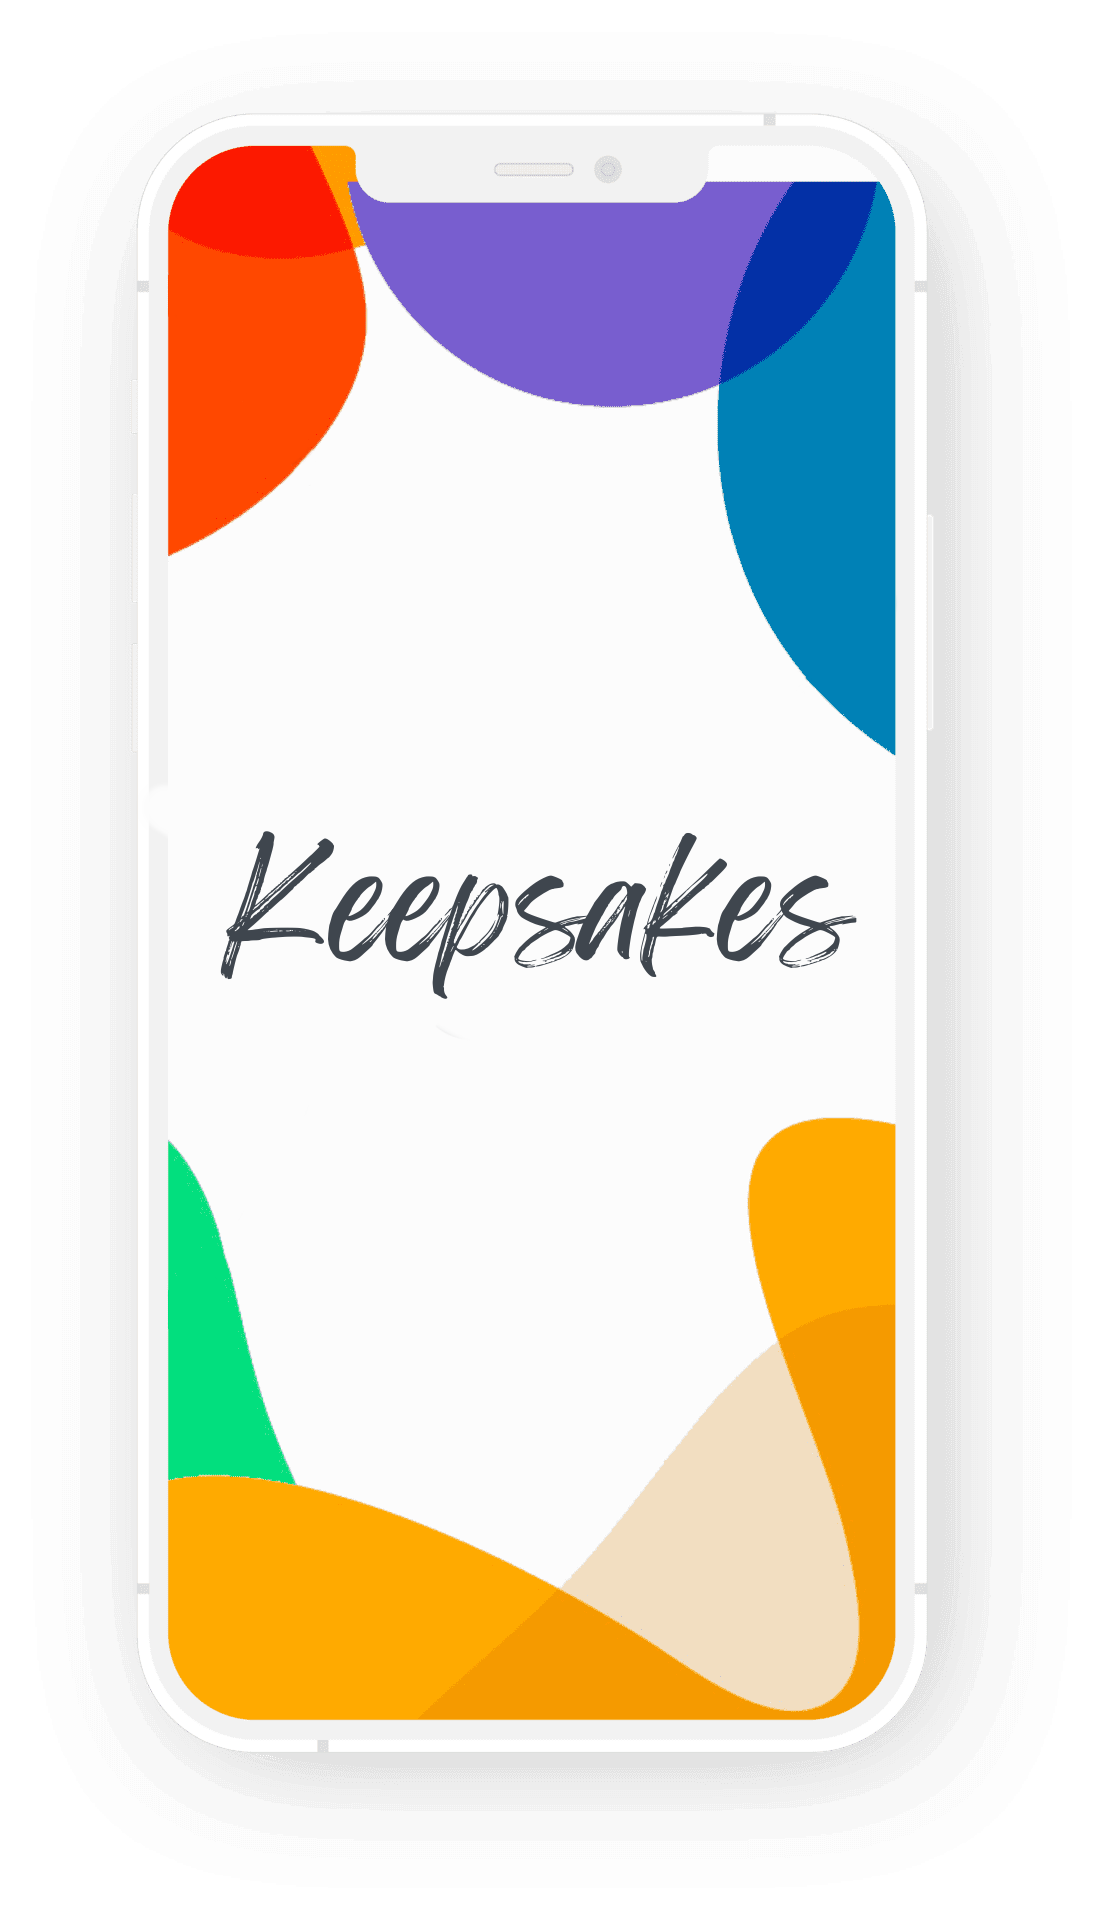 keepsakes-phone-title